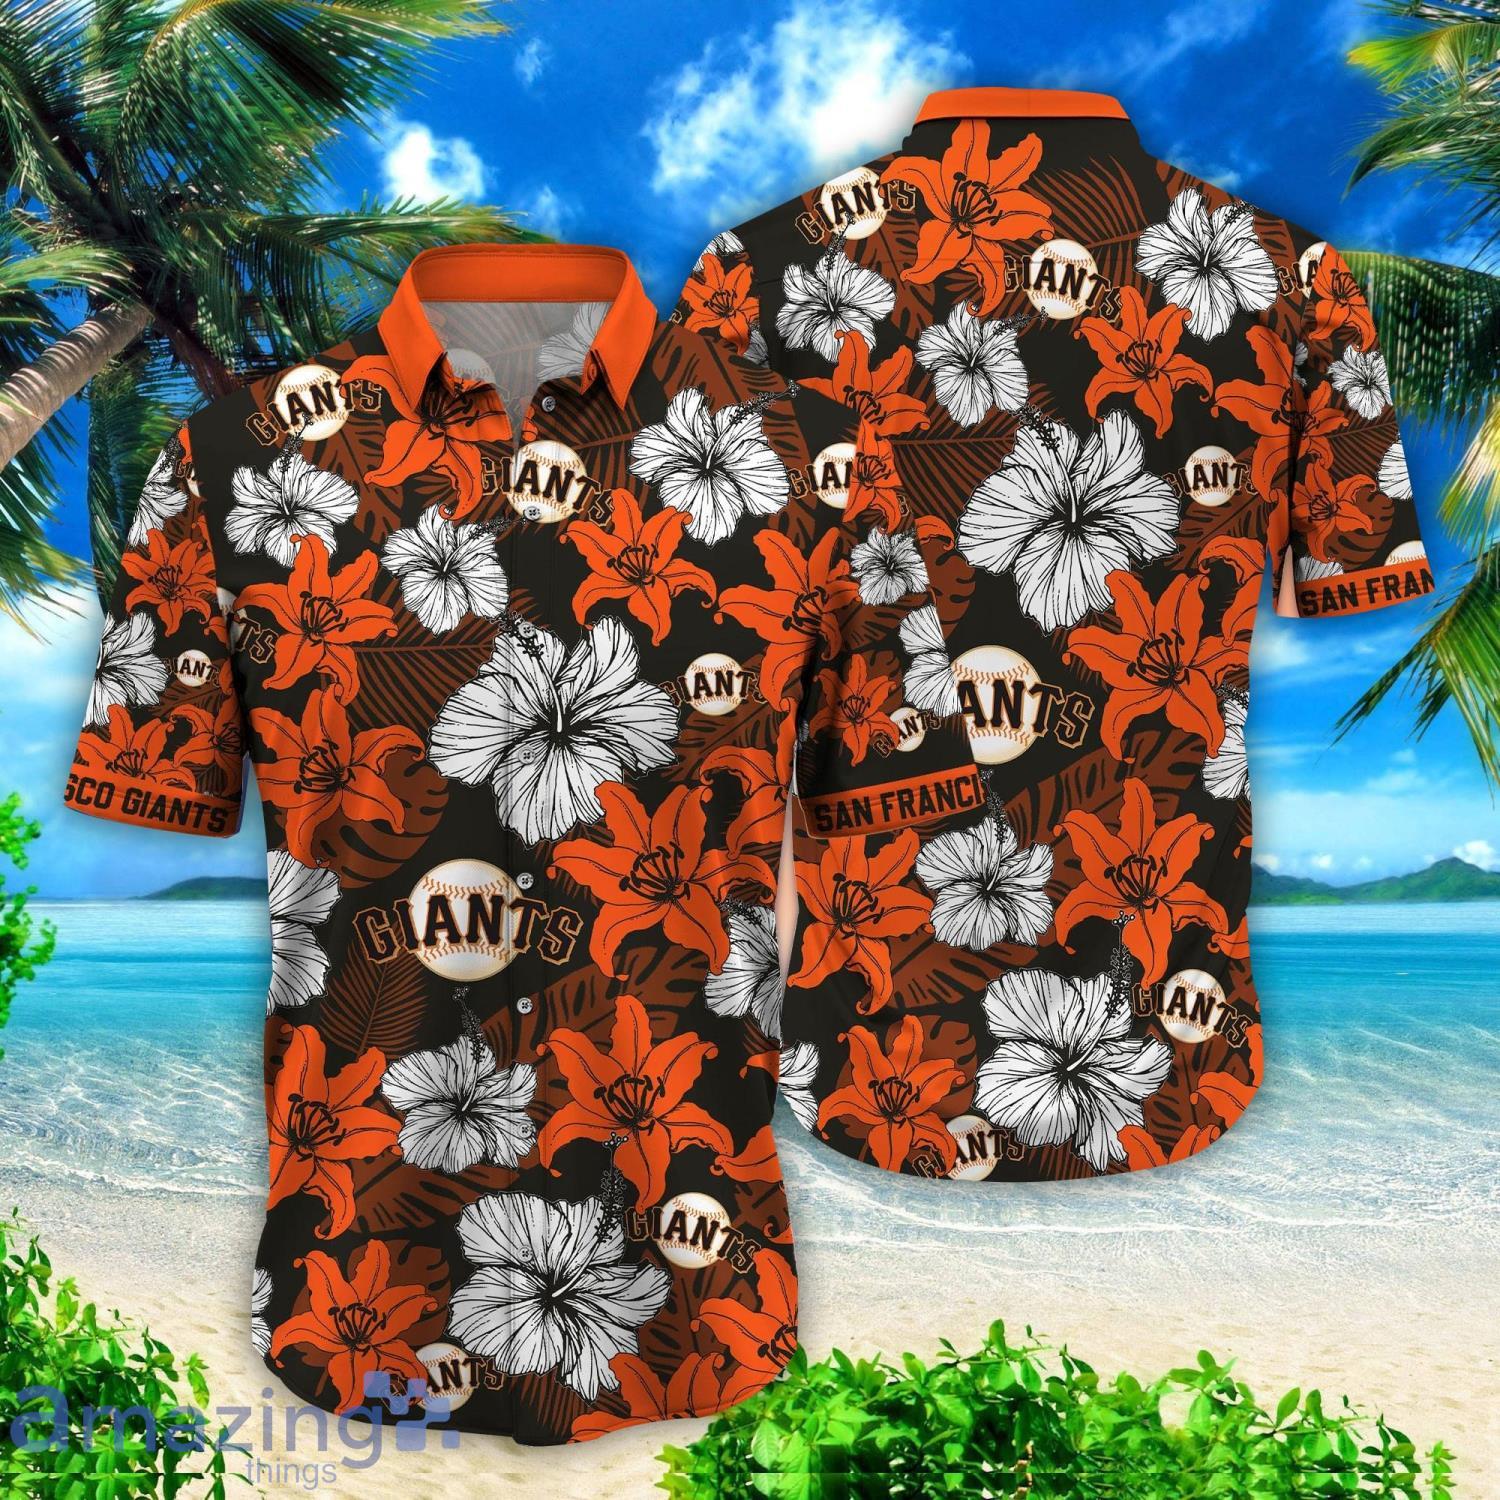 hawaiian sf giants shirt